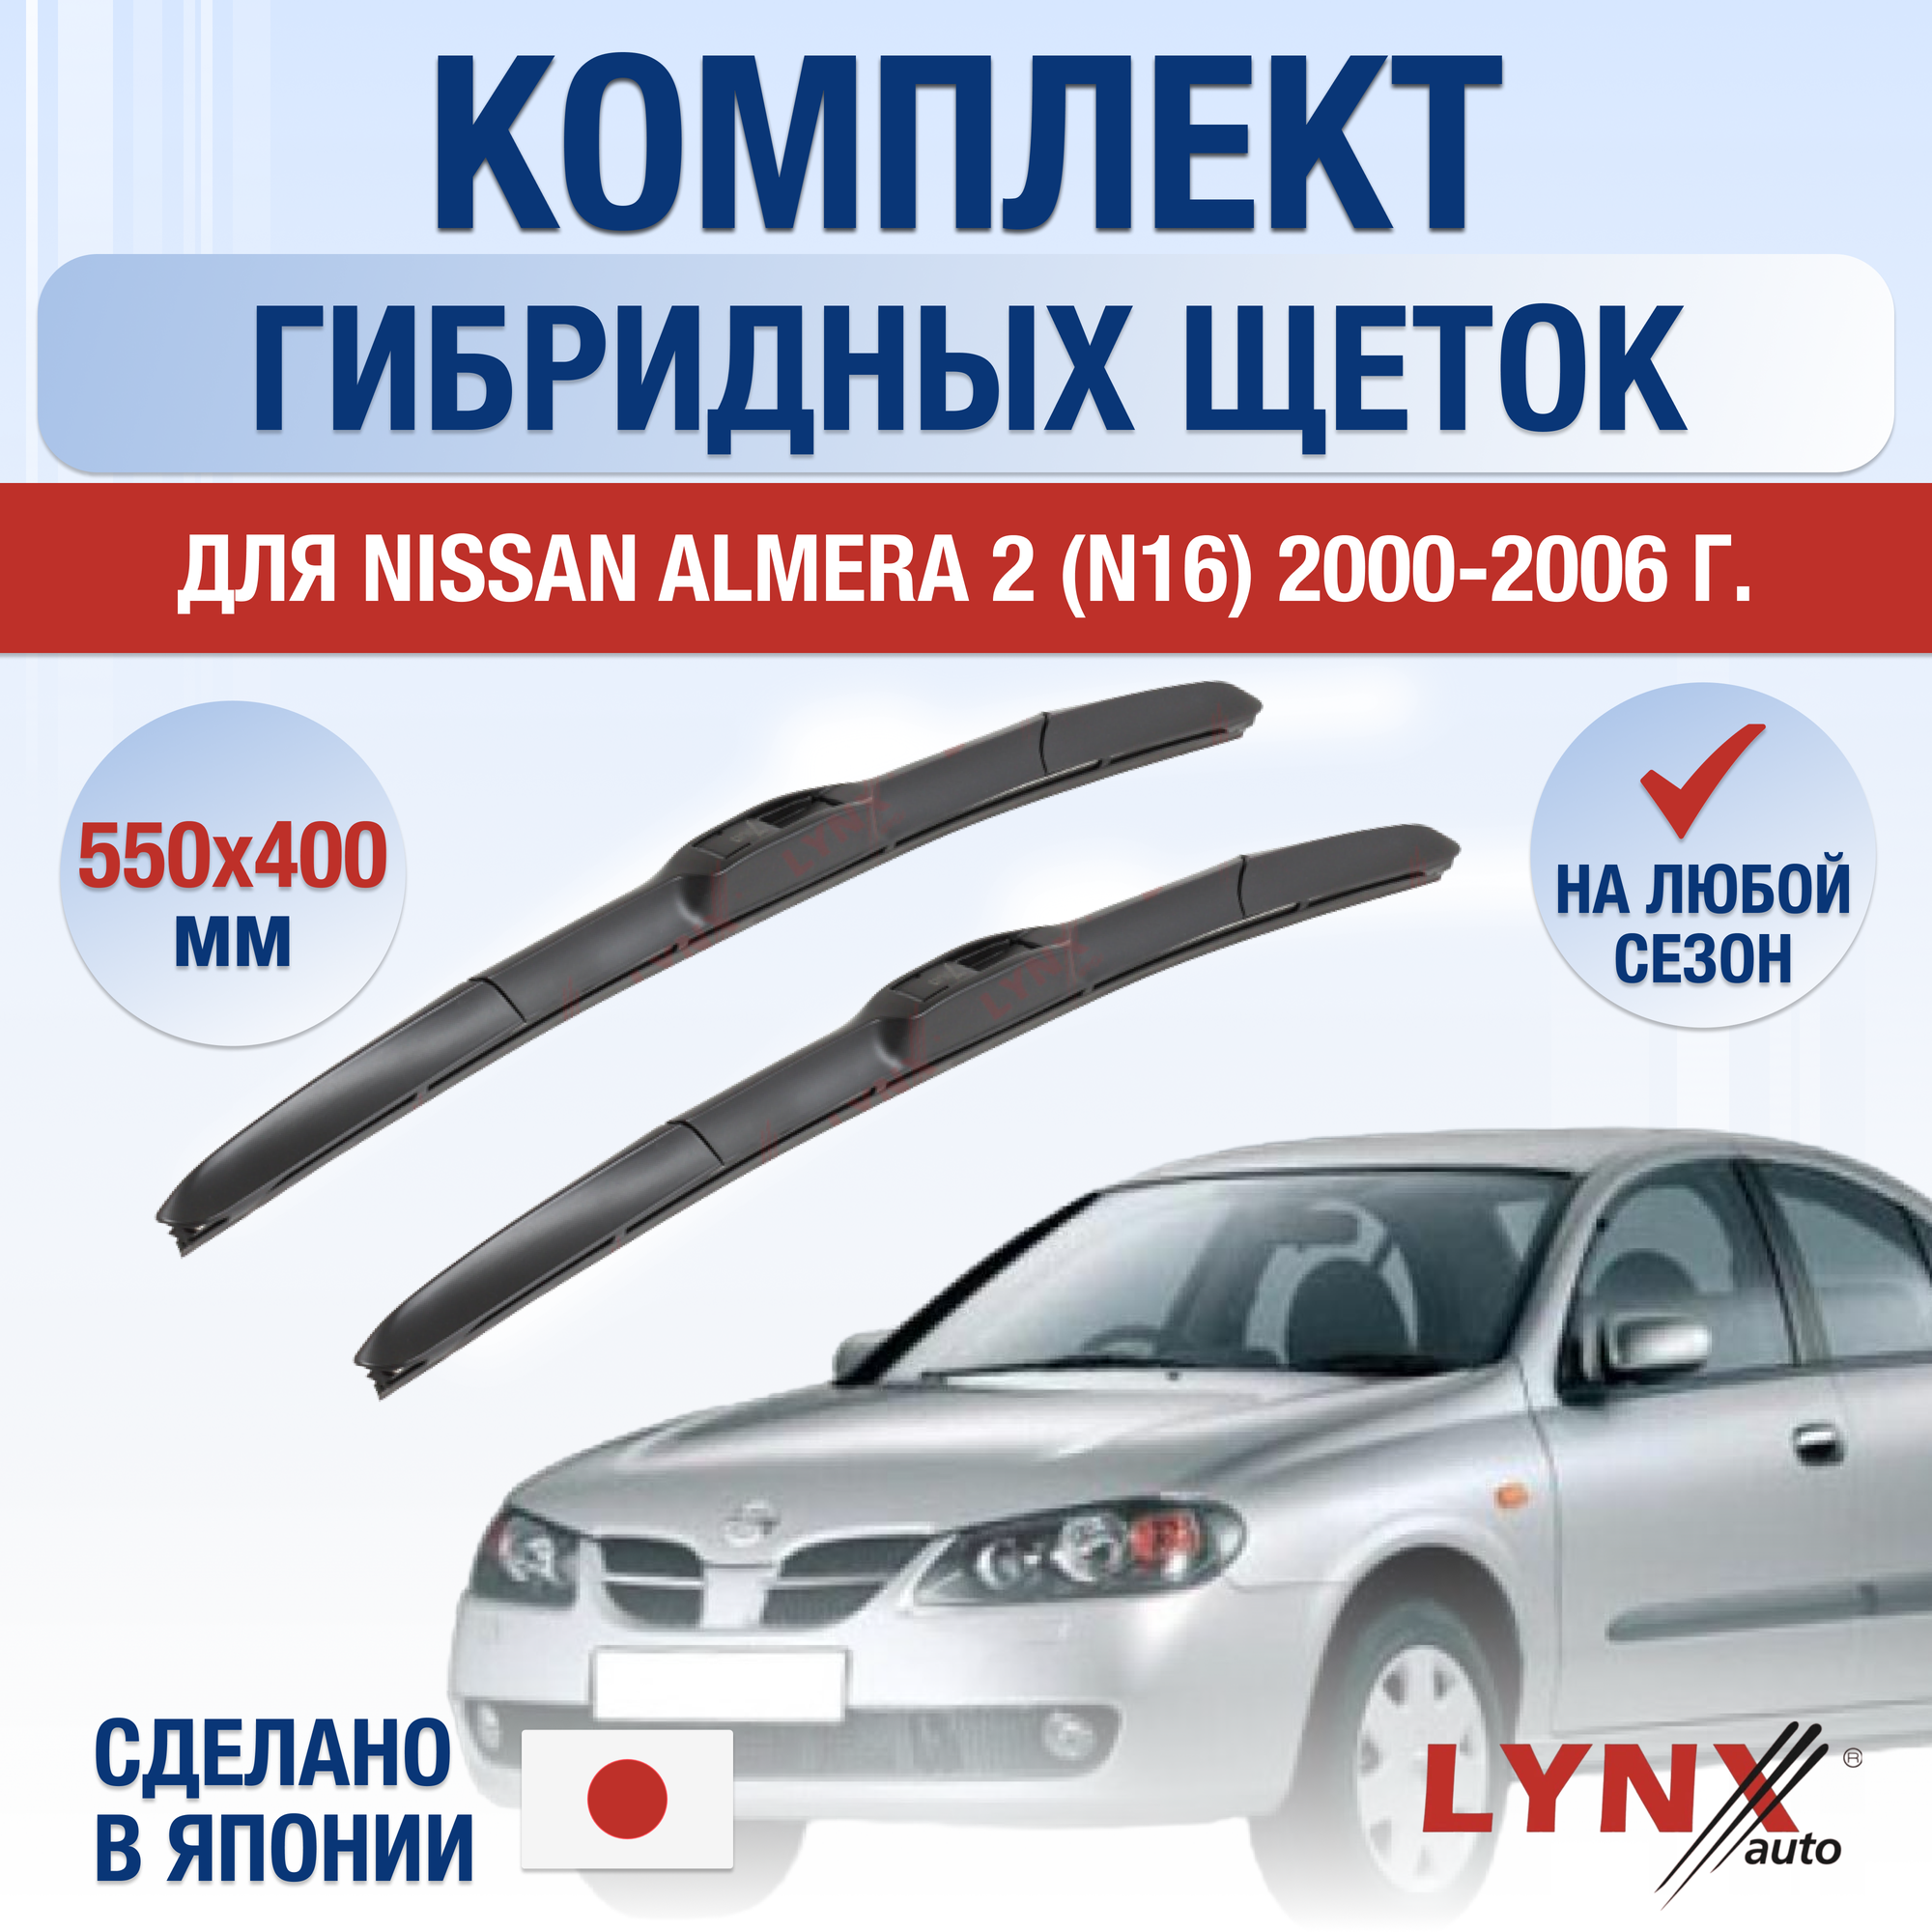 Щетки стеклоочистителя для Nissan Almera 2 (N16) / 2000 2001 2002 2003 2004 2005 2006 / Комплект гибридных дворников 550 400 мм Ниссан Альмера